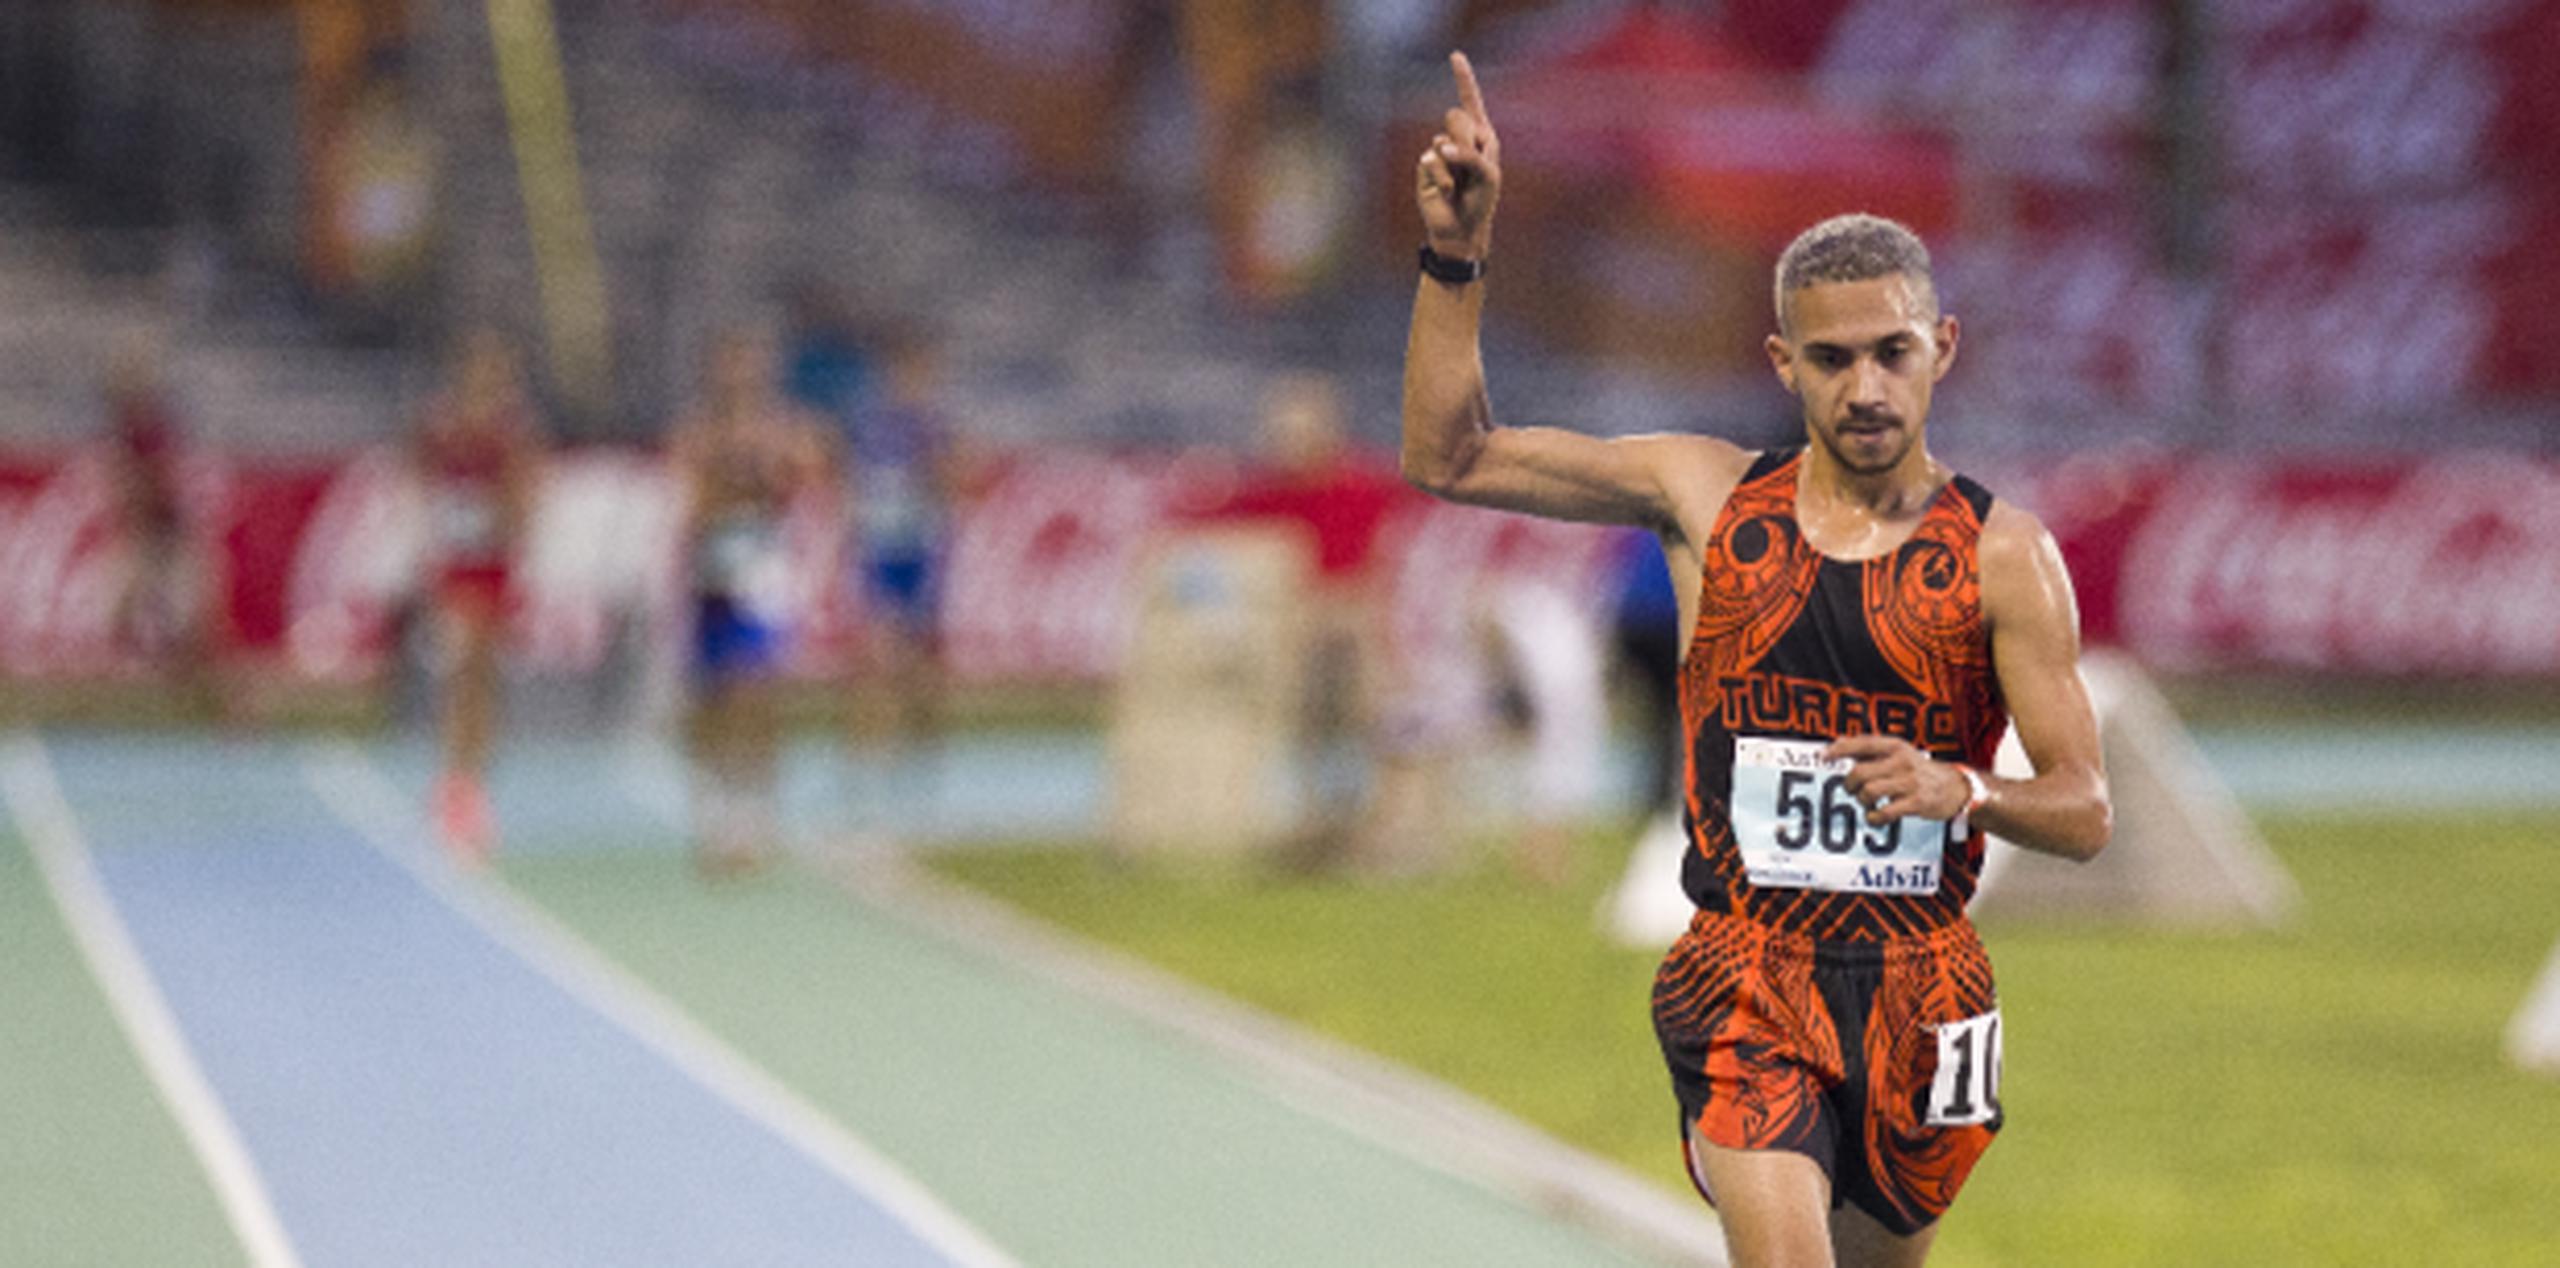 José Meléndez del Turabo gana fácilmente el evento de 5000 metros marcha. (JORGE.RAMIREZ@GFRMEDIA.COM)